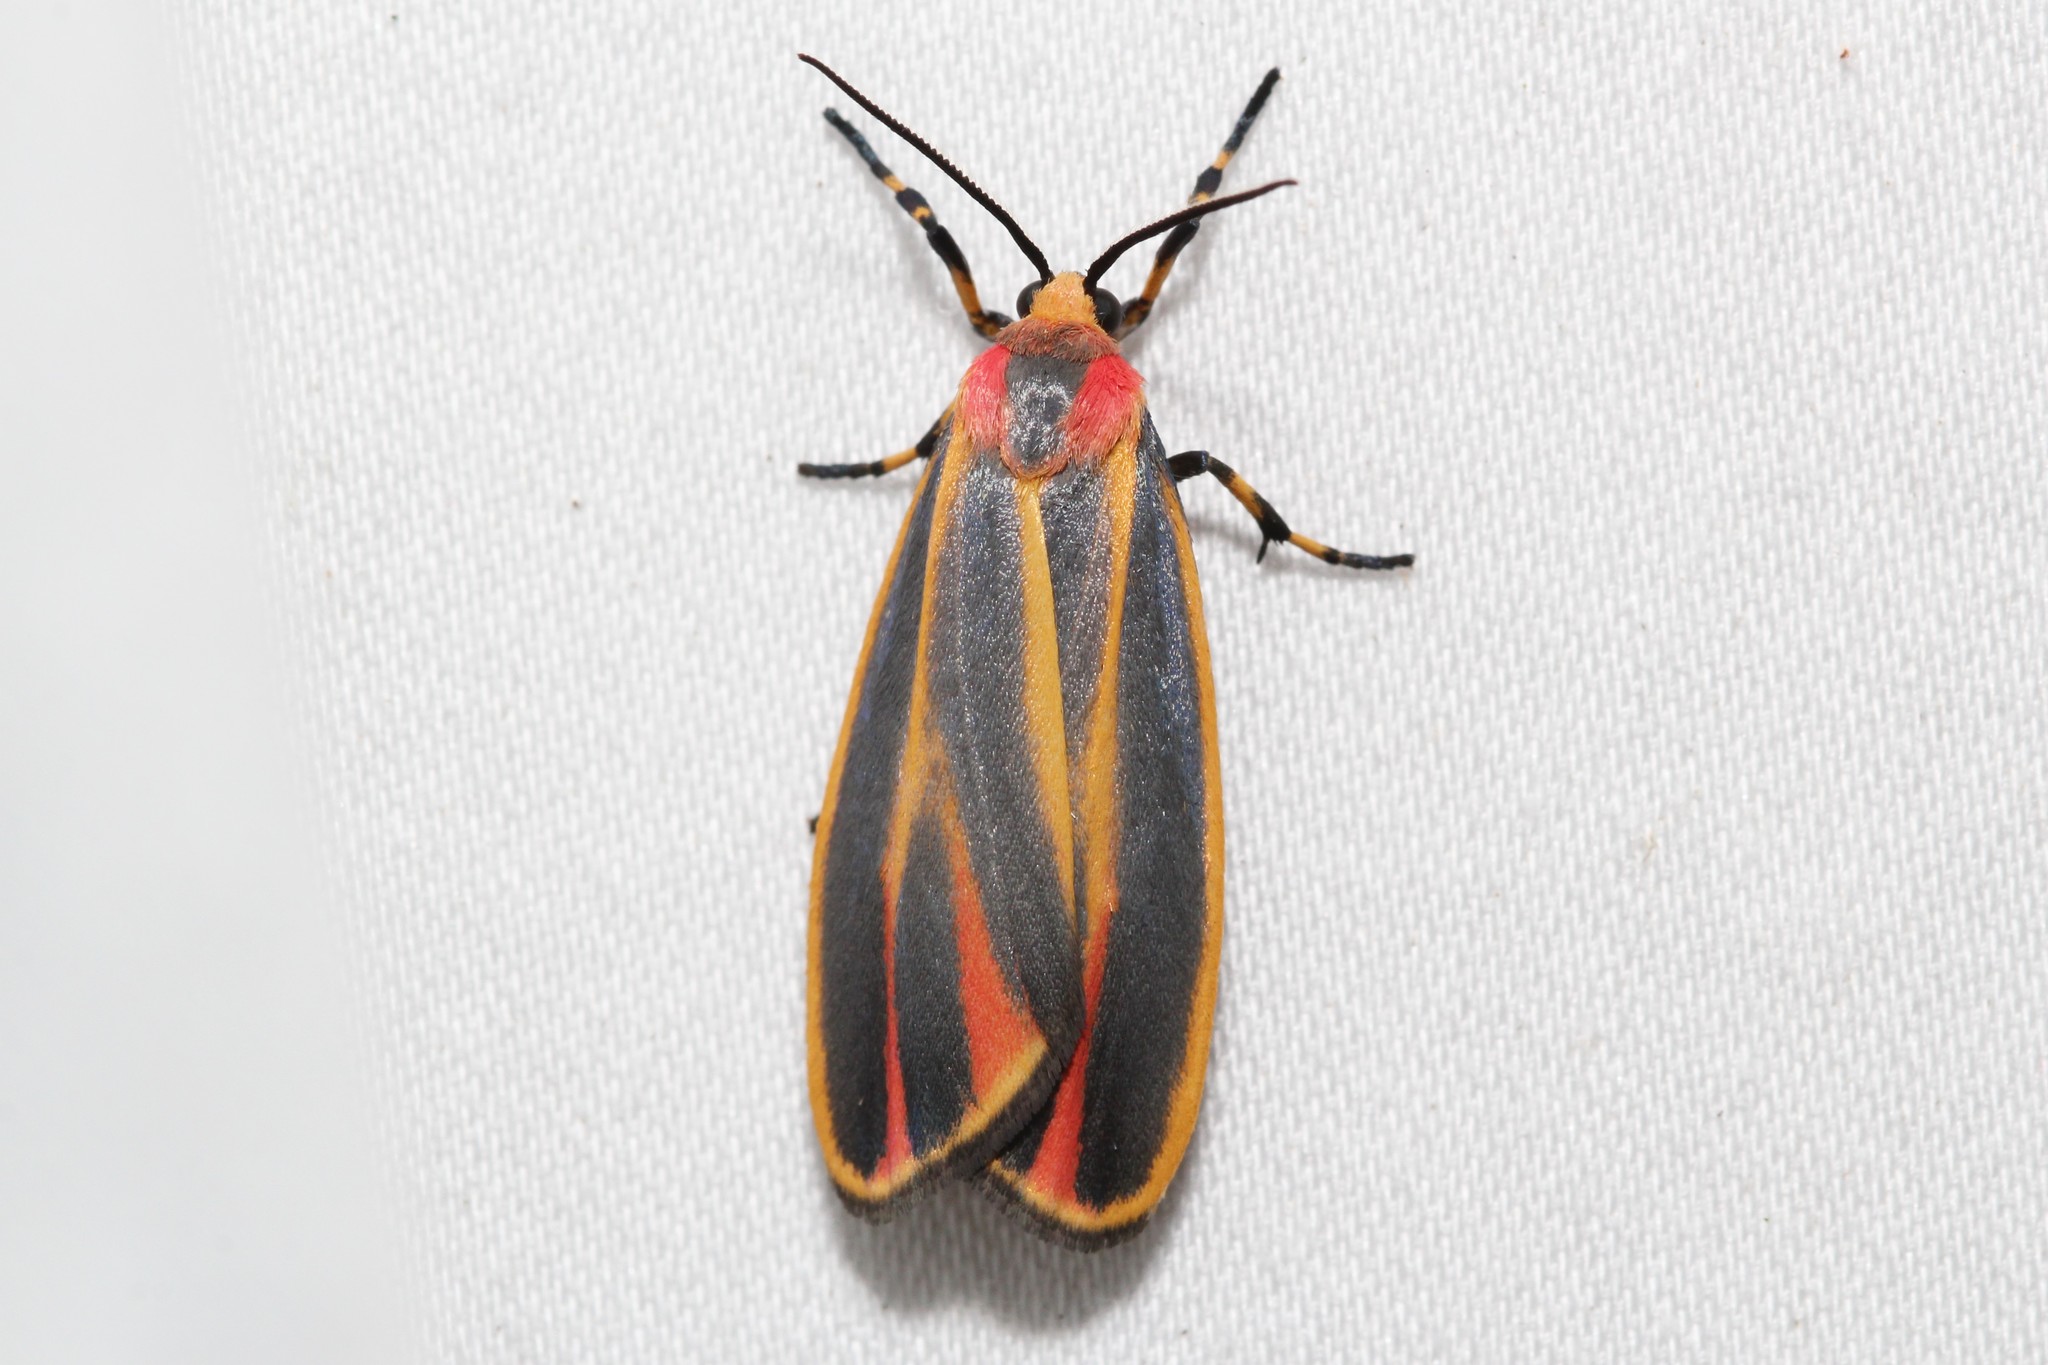 Un papillon de nuit lisse aux ailes rayées de rouge, orange et noir, posé sur un essuie-tout.